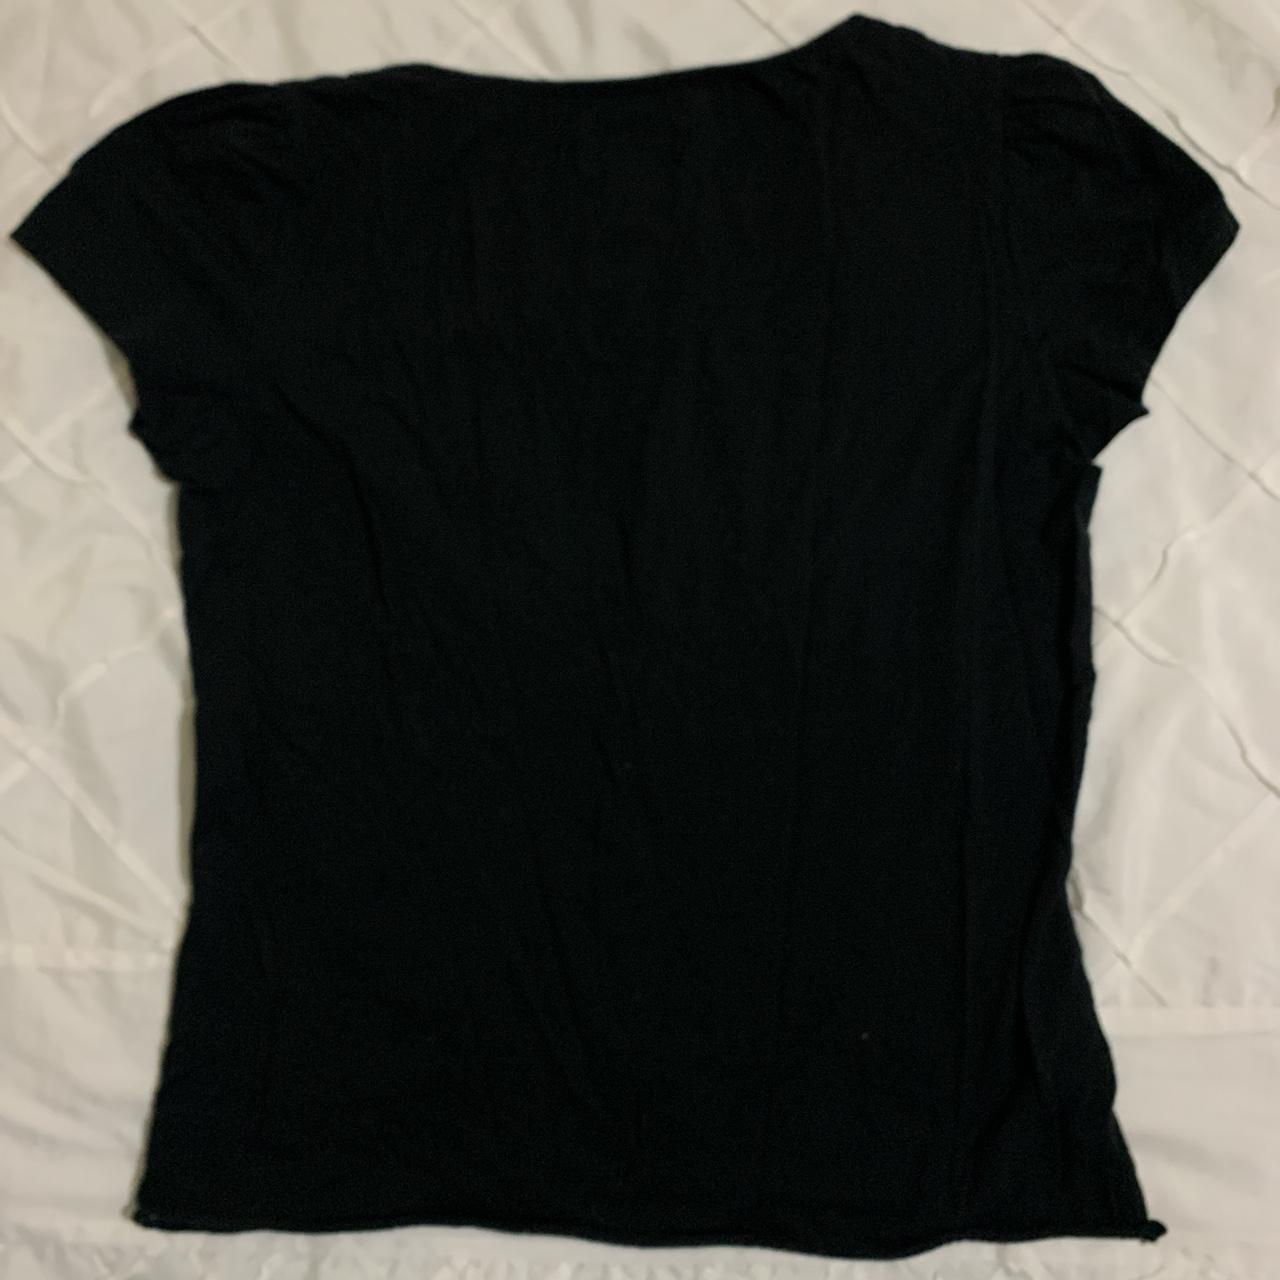 Product Image 2 - black basic shirt from jigsaw